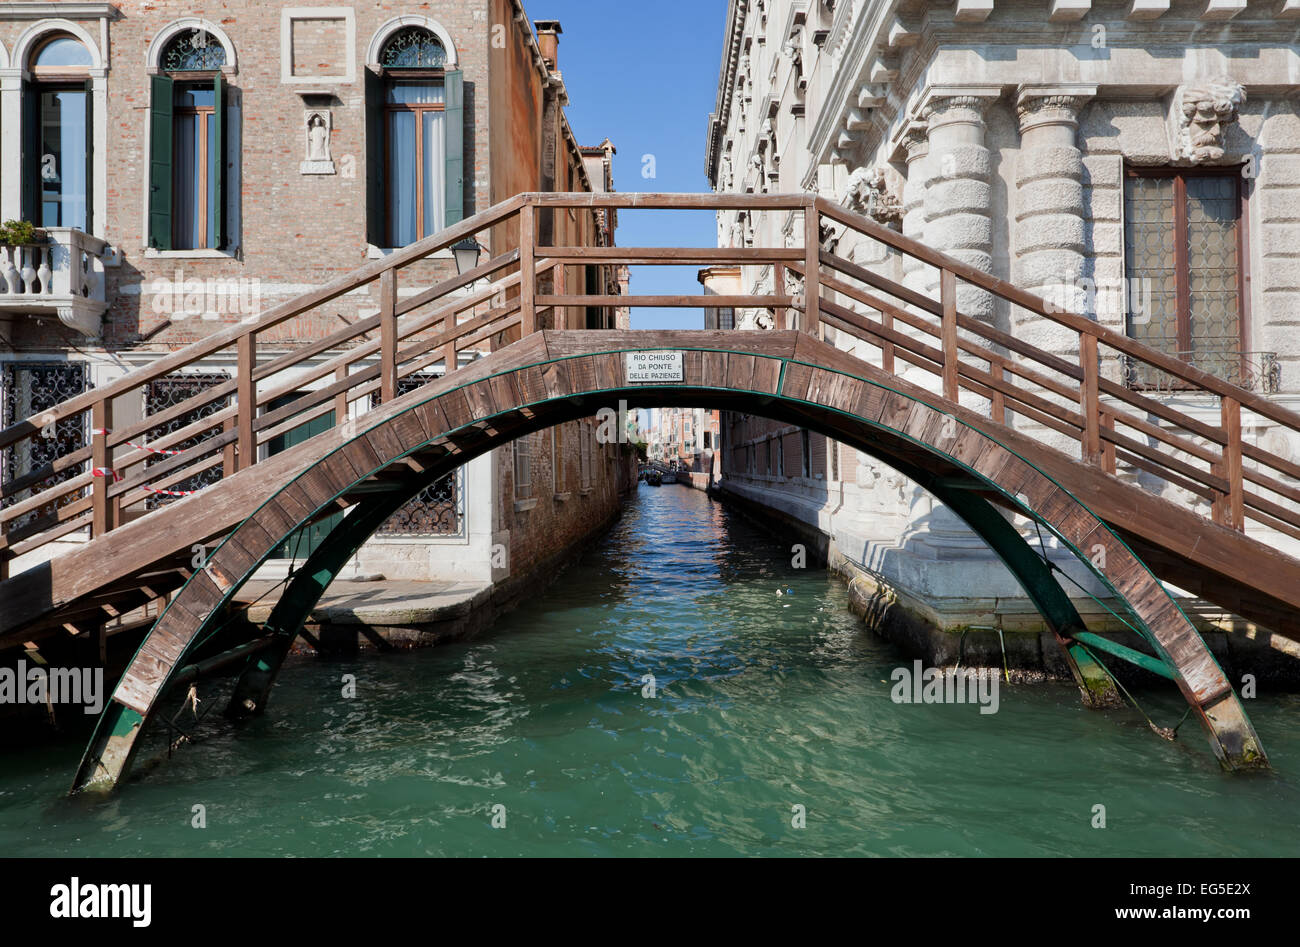 Venedig, Italien. Eine Brücke über einen schmalen Kanal zwischen alten venezianischen Architektur Stockfoto